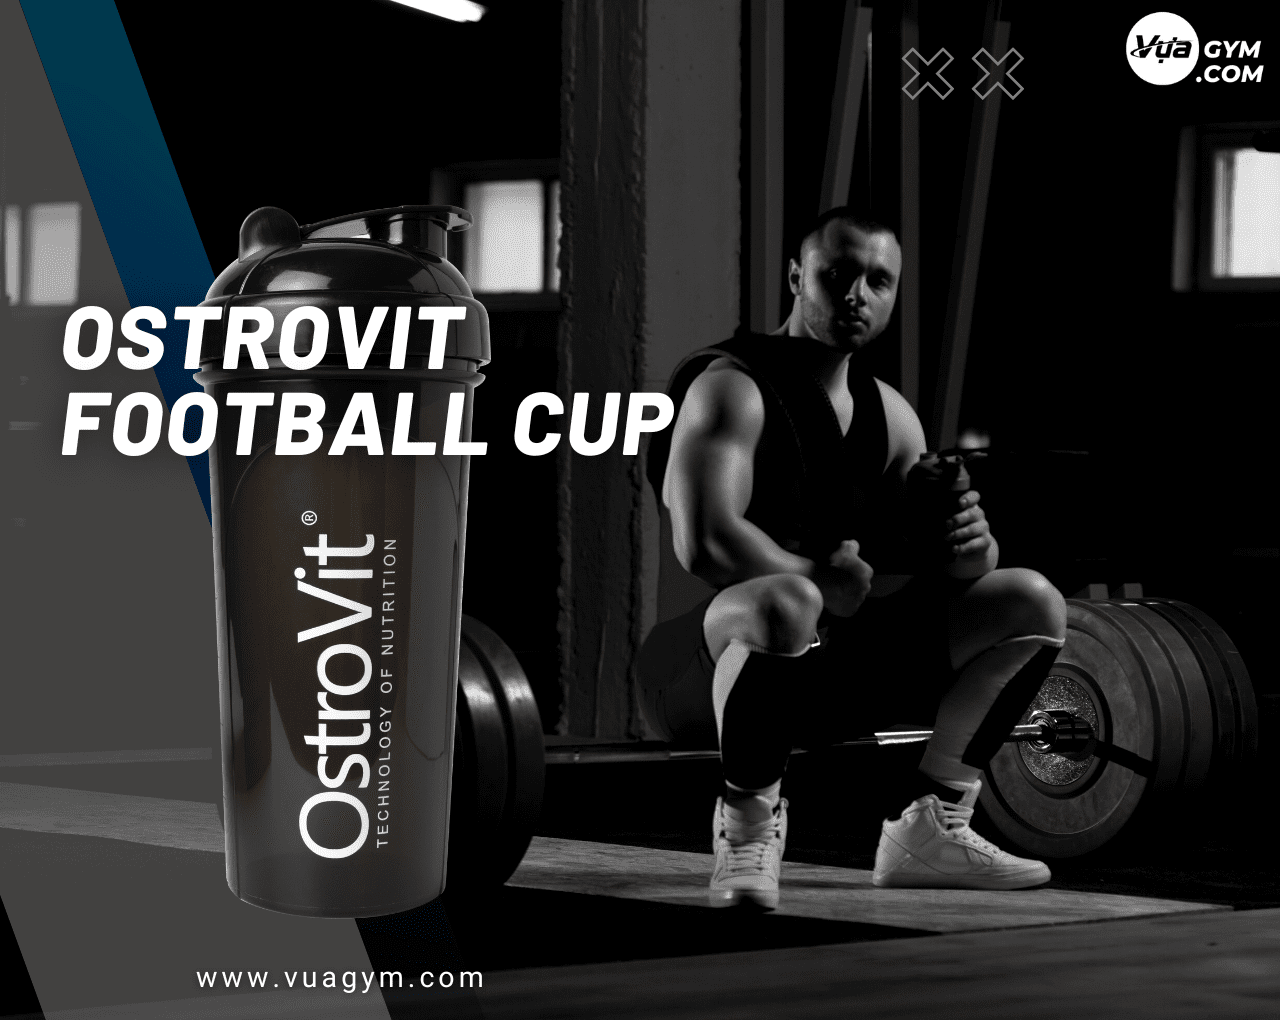 Bình Lắc Ostrovit Football Cup (700ml) - ostrovit fooball